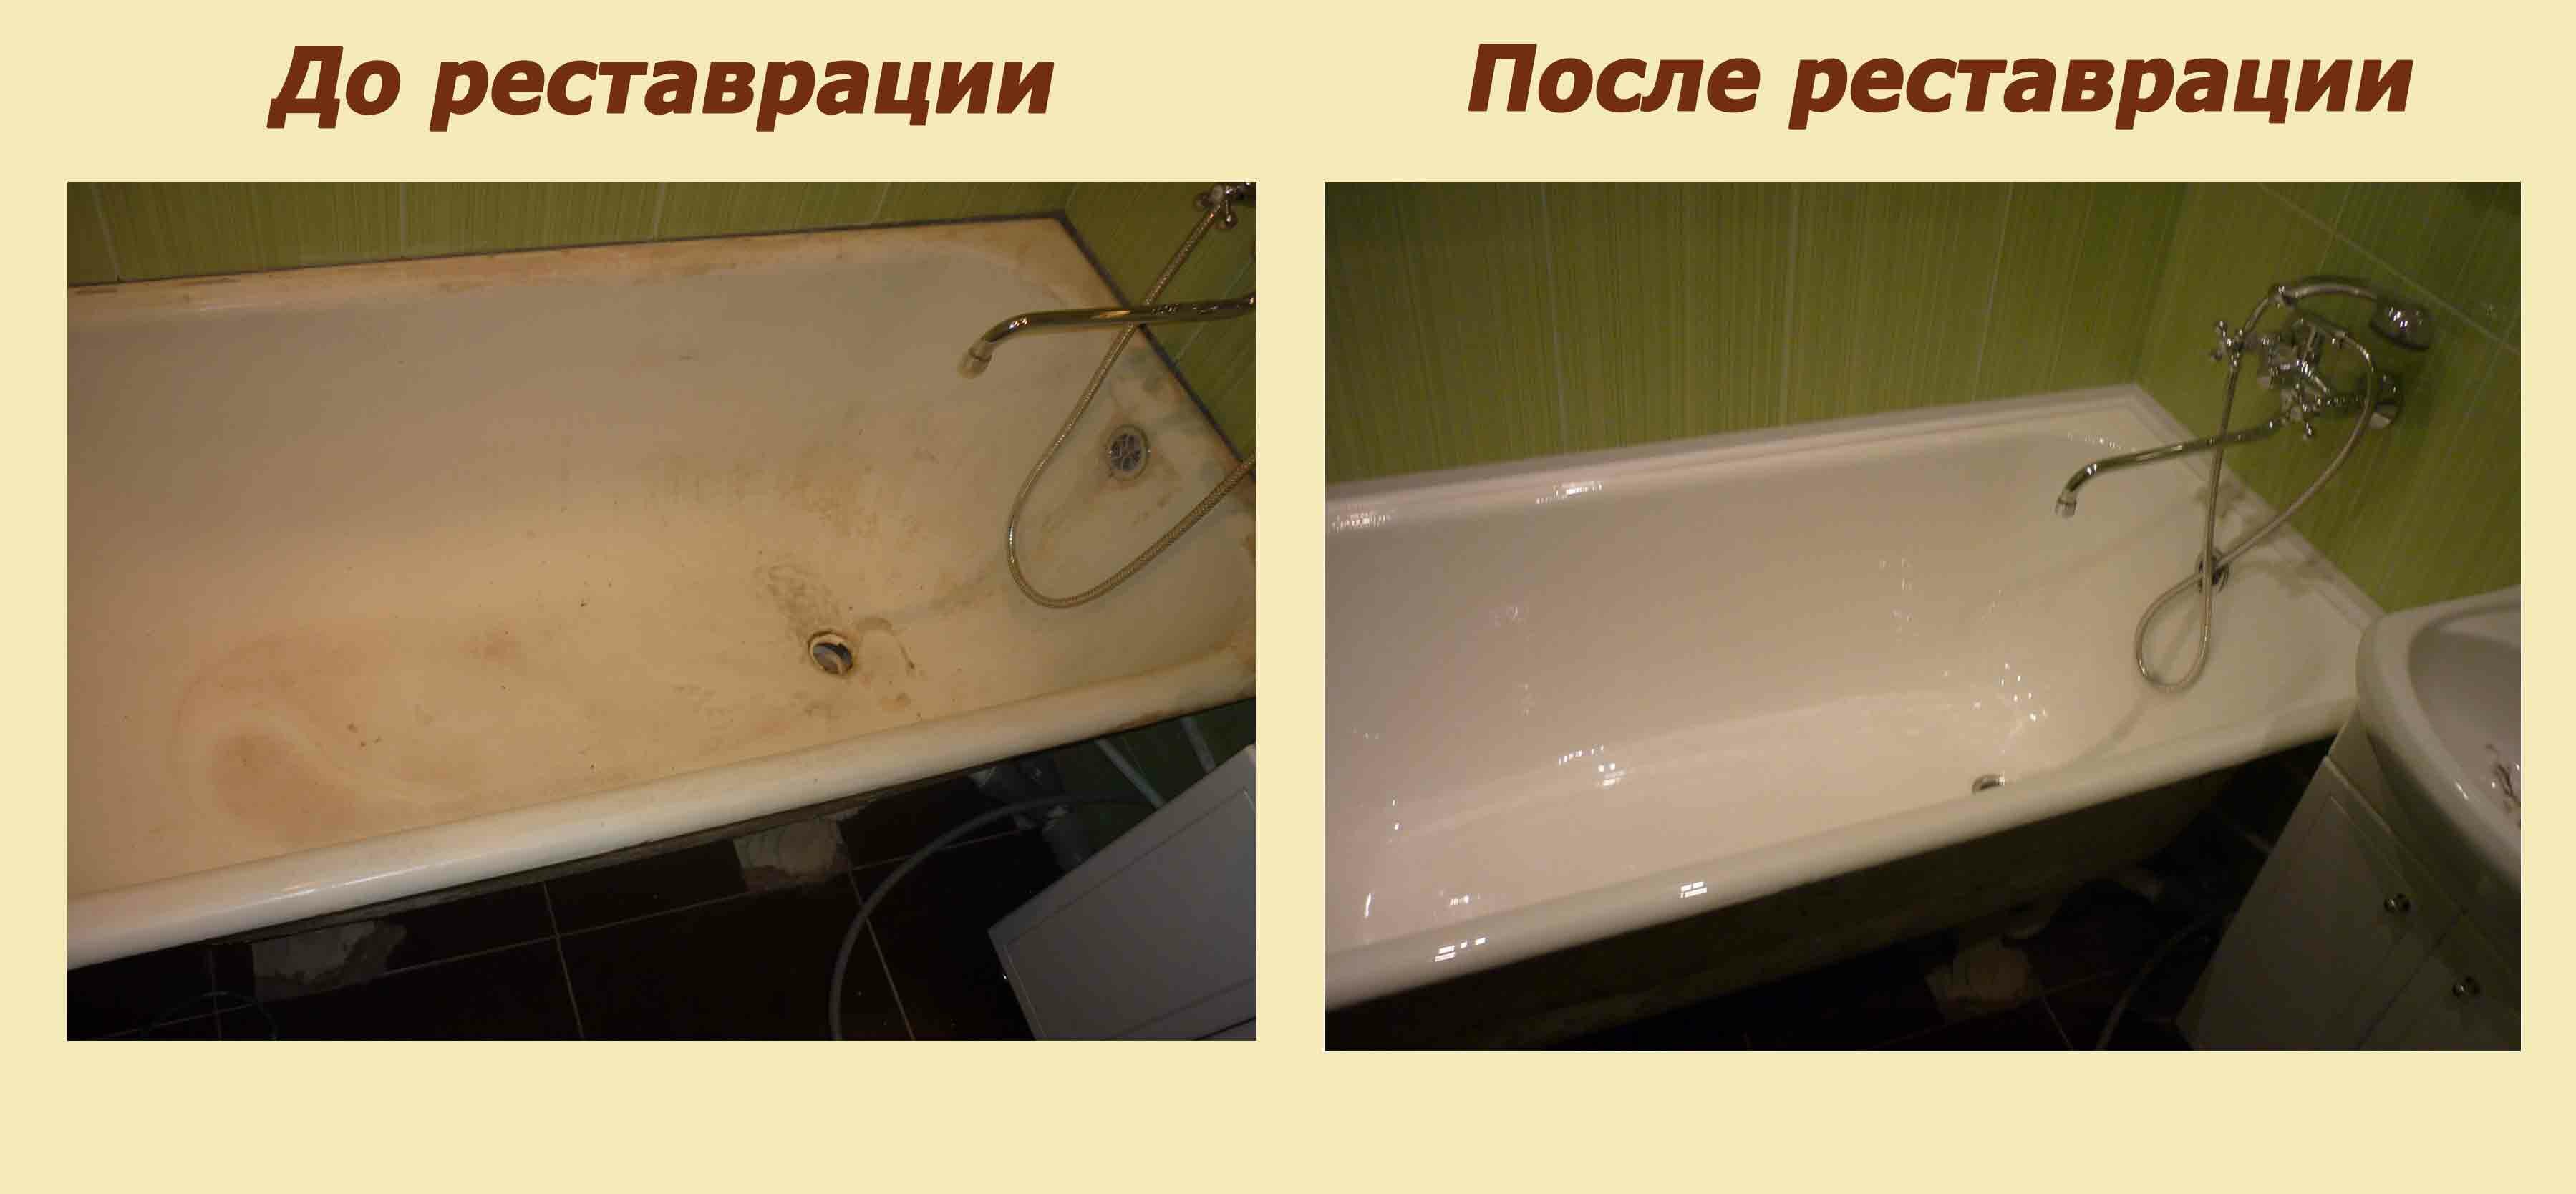 Реставрация чугунной ванны: популярные методы